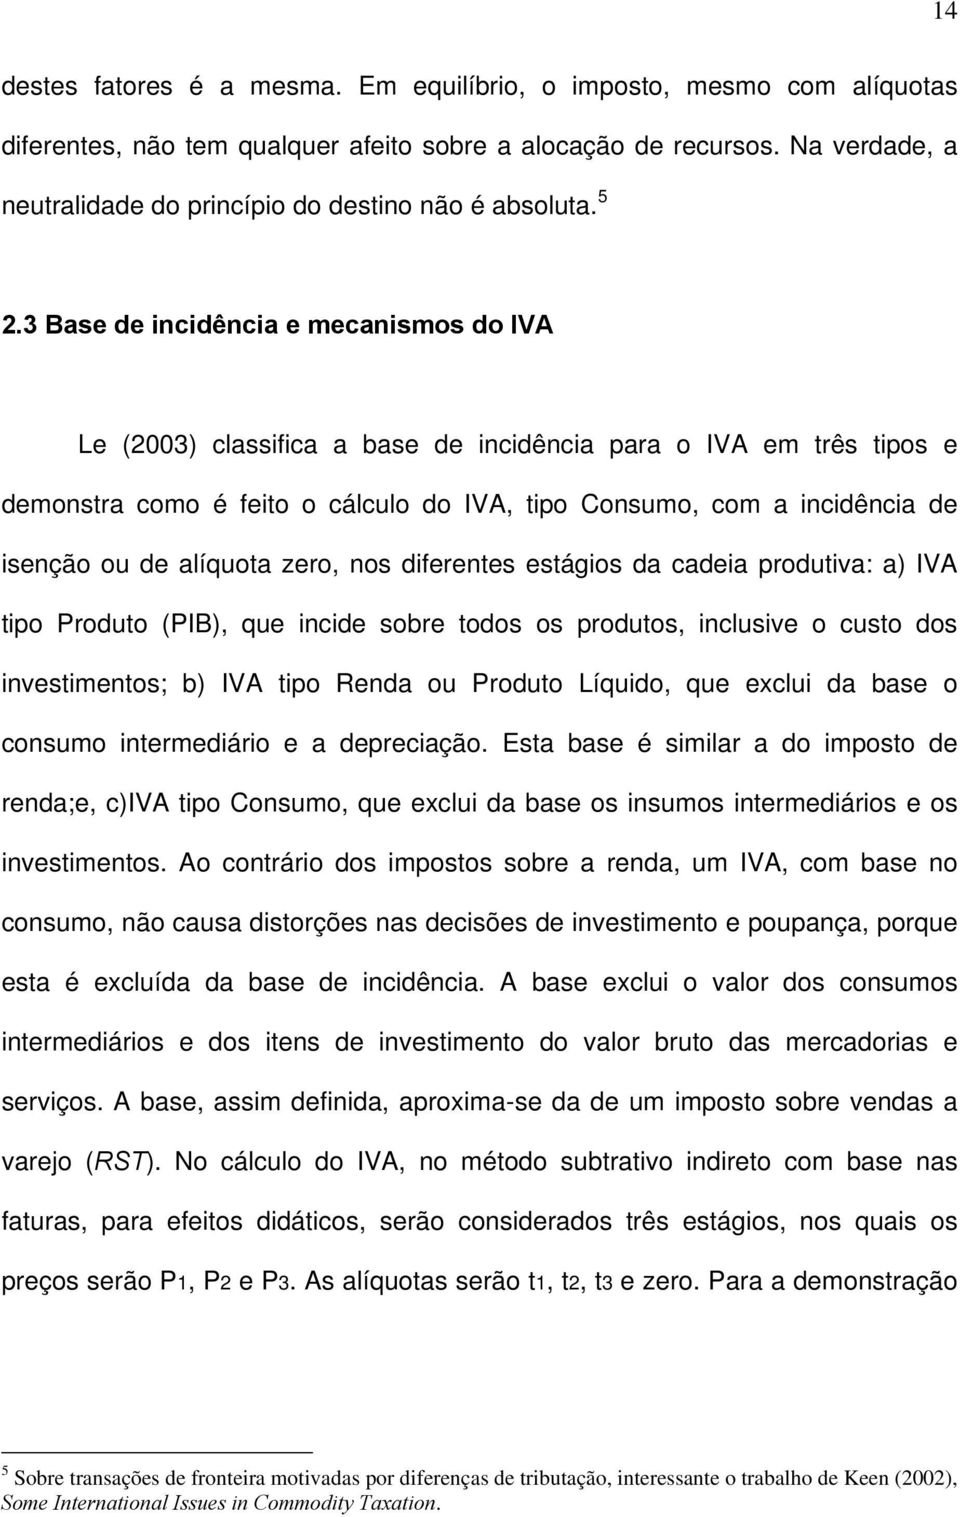 3 Base de incidência e mecanismos do IVA Le (2003) classifica a base de incidência para o IVA em três tipos e demonstra como é feito o cálculo do IVA, tipo Consumo, com a incidência de isenção ou de